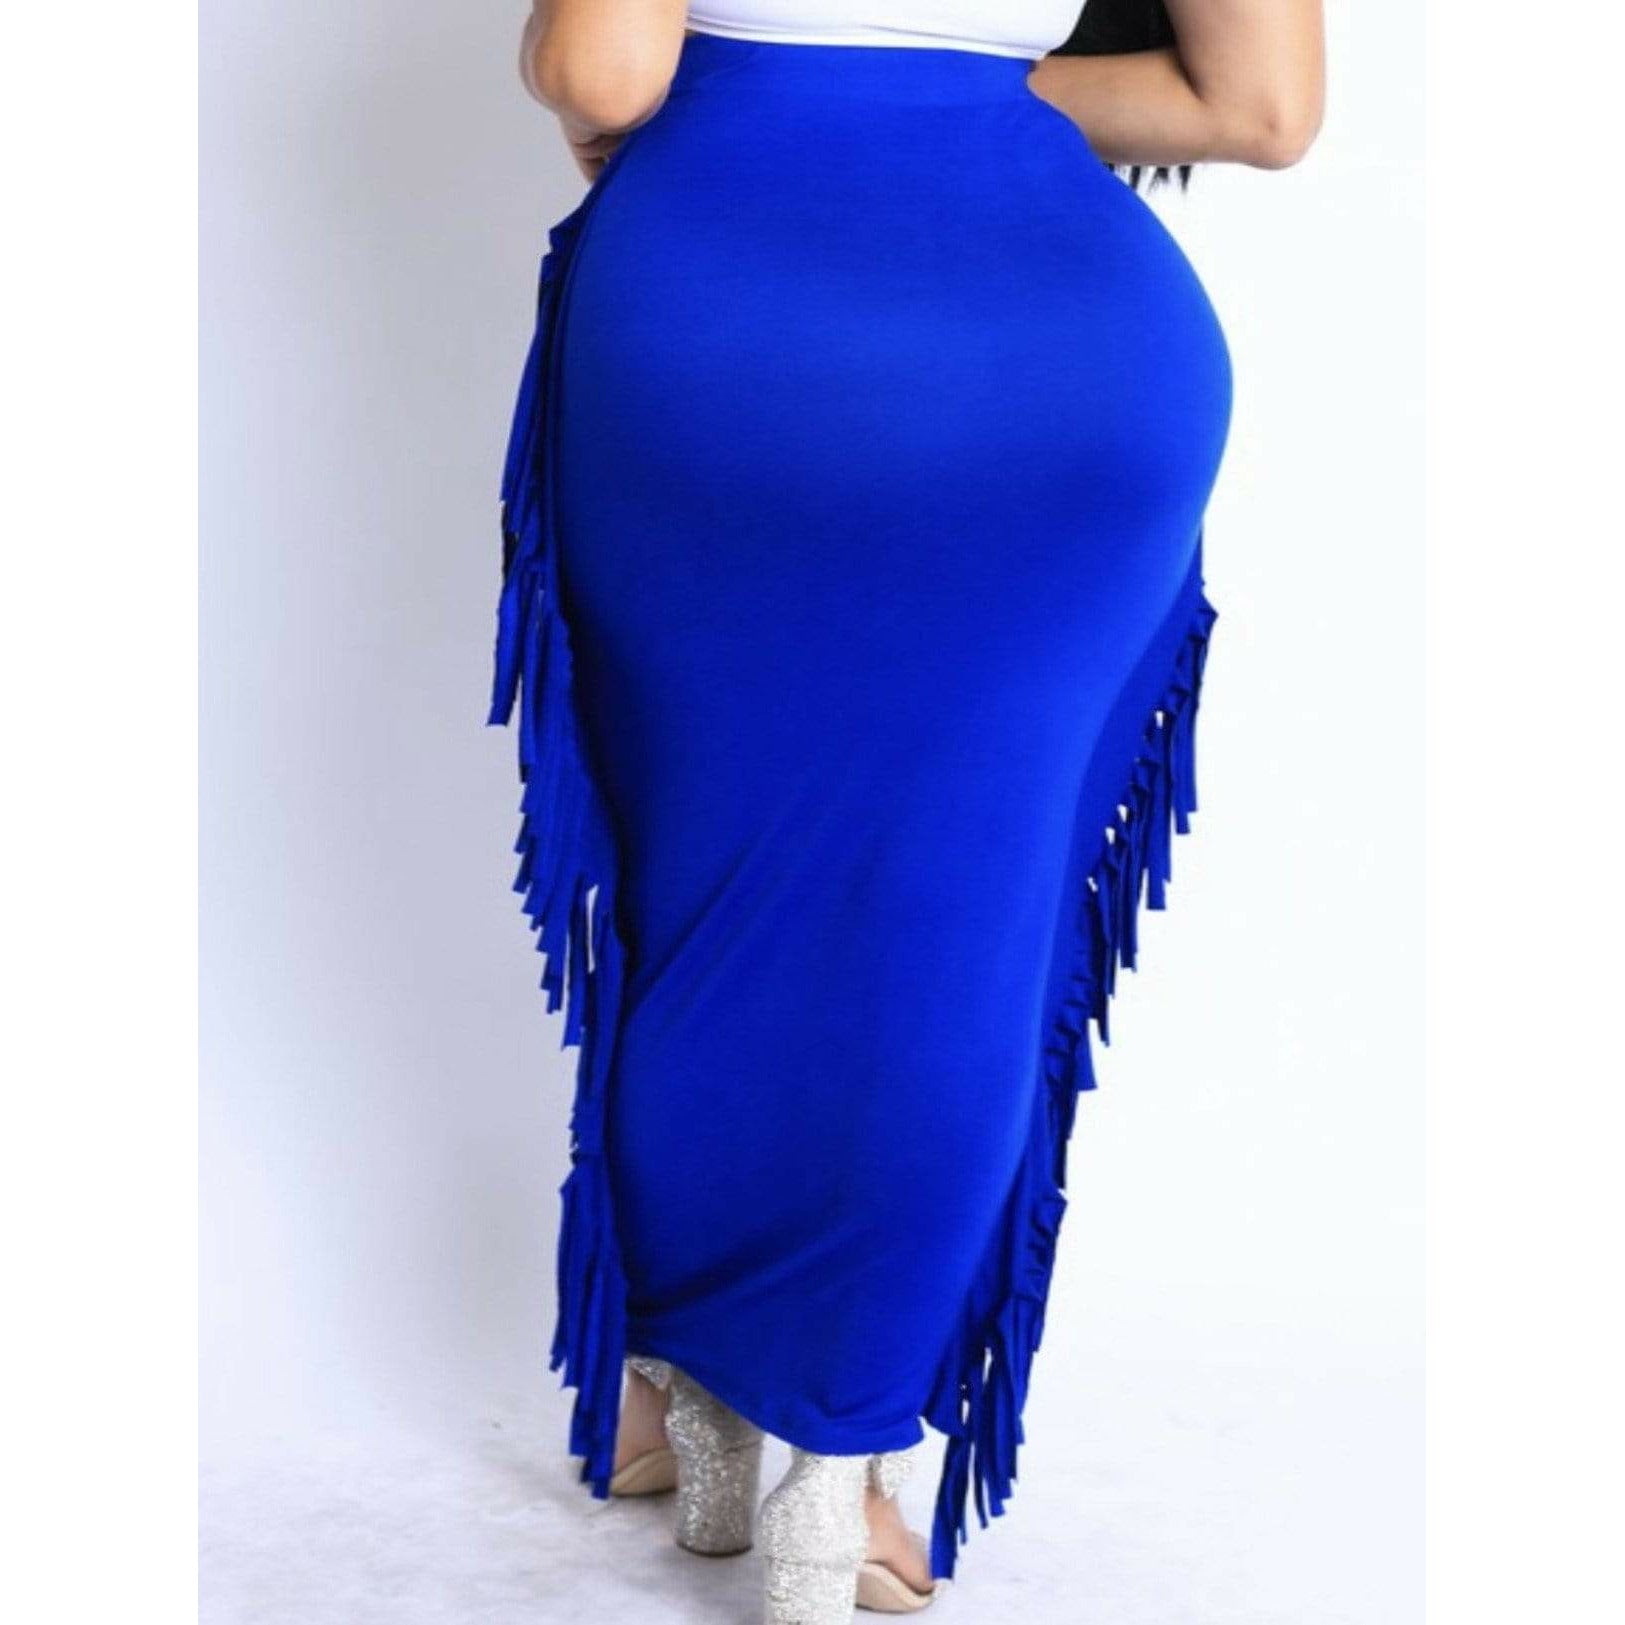 Blue Fringe Skirt